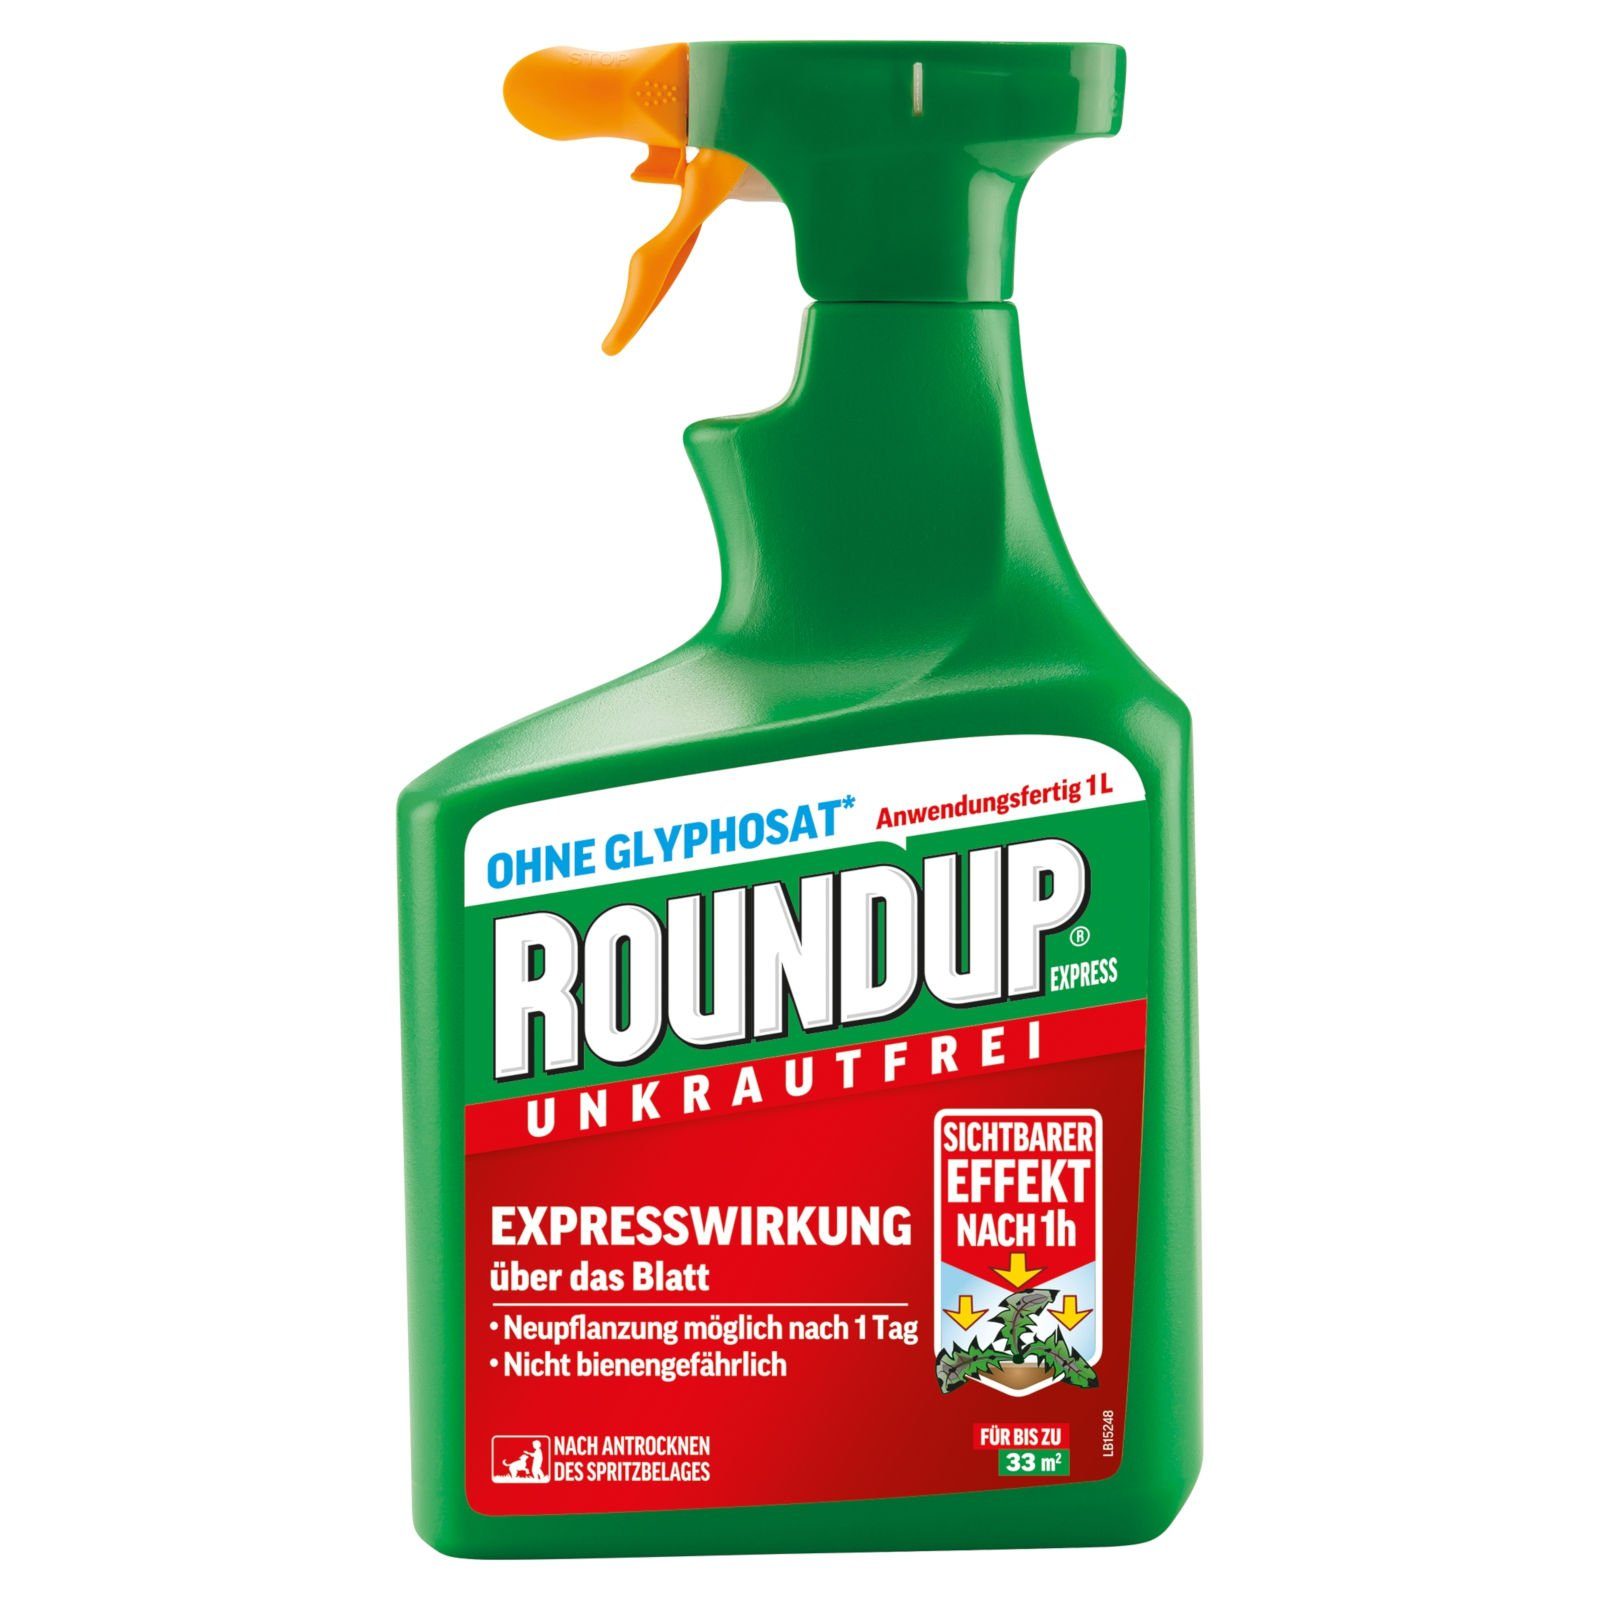 ROUNDUP Unkrautbekämpfungsmittel Express Spray - 1 Liter